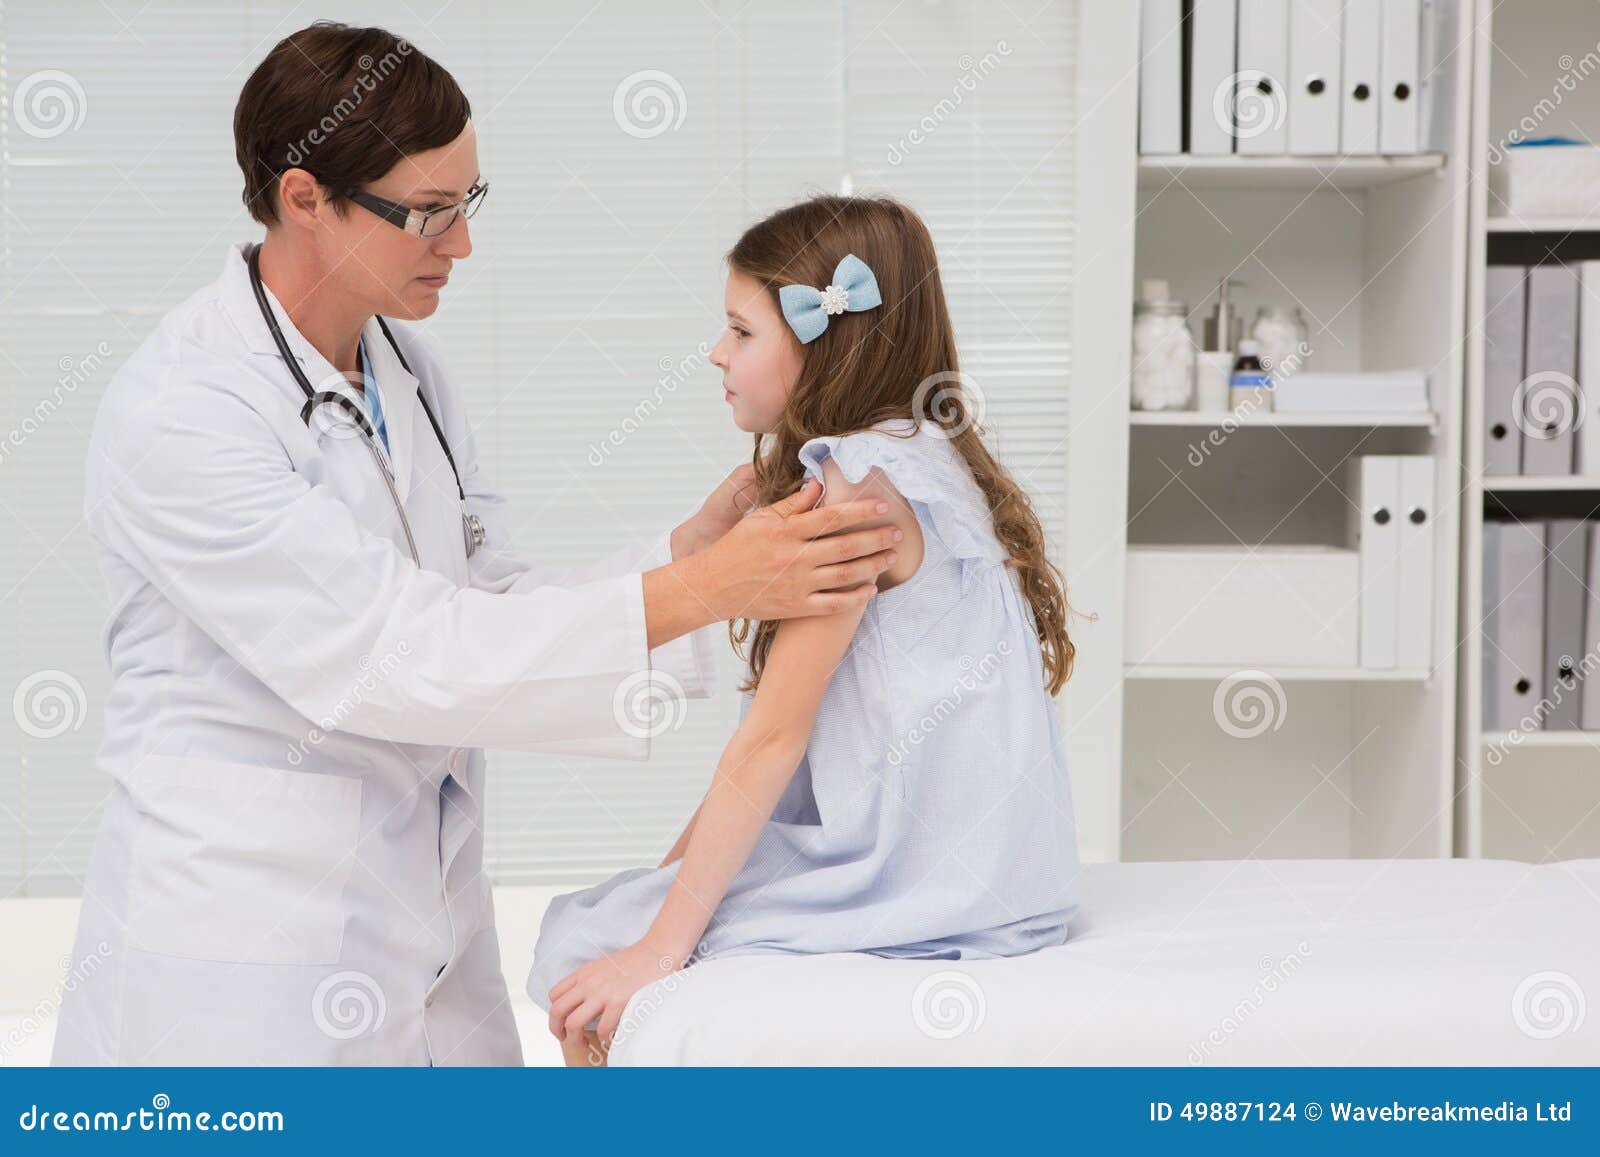 Врач осматривает девочку. Девочка доктор. Девочка у врача. Молодые девочки у врача. Маленькие девочки у врача.